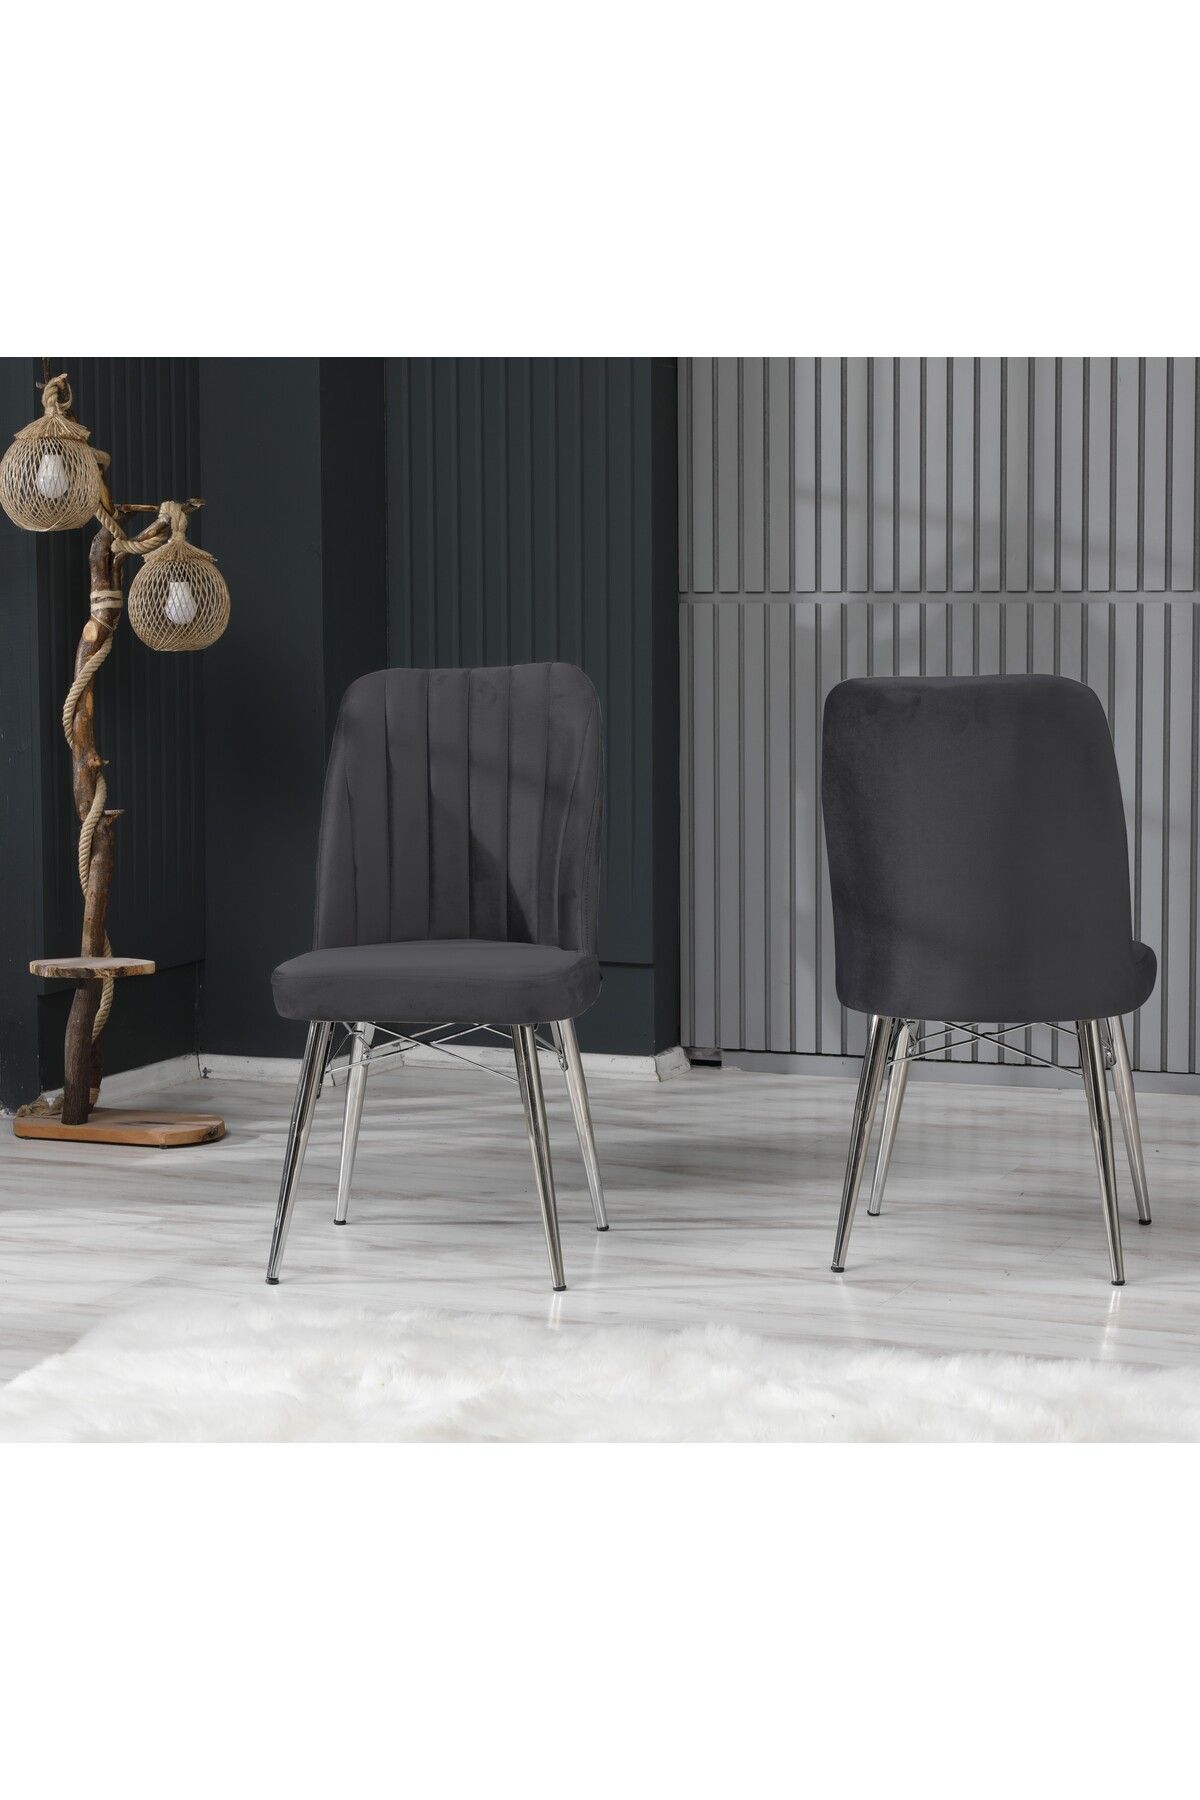 EZU Salon Mutfak Sandalyeleri Seher Antrasit Silver Ayaklı Sandalye